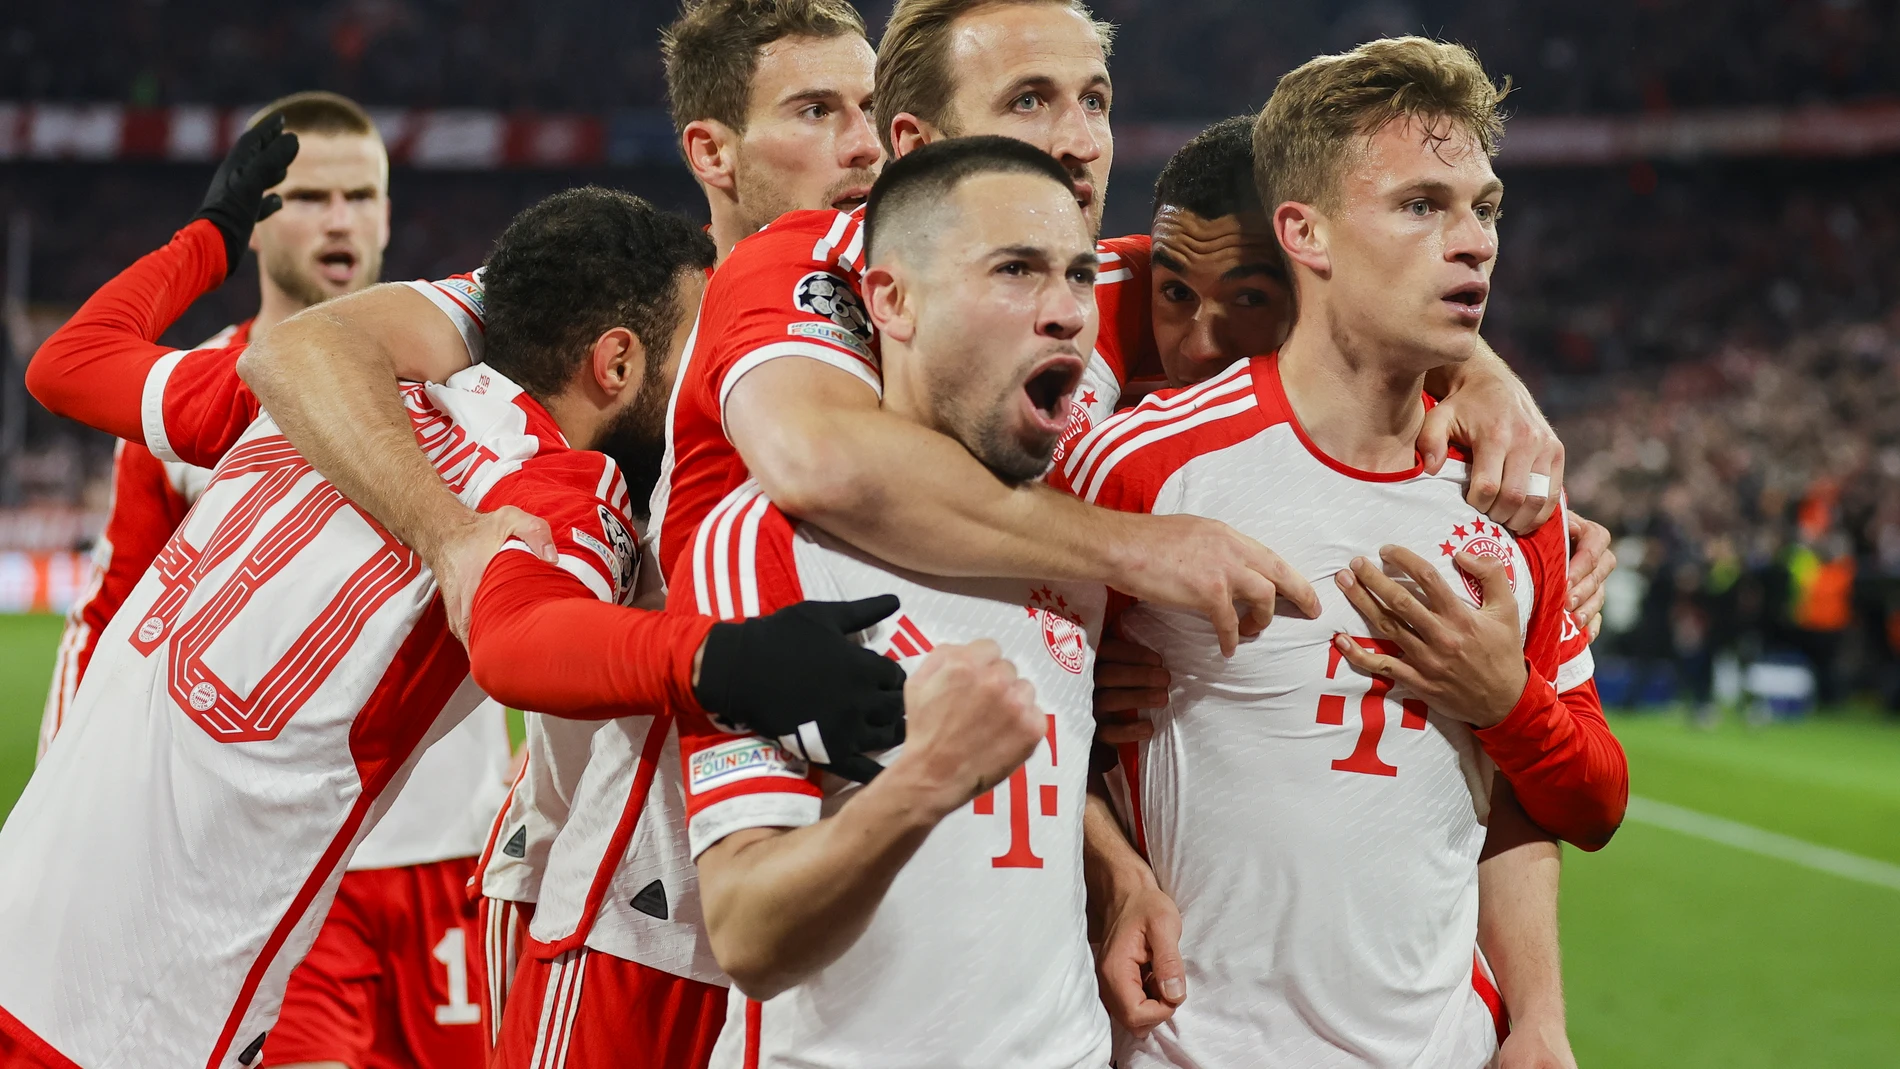 KImmich celebra el gol con sus compañeros